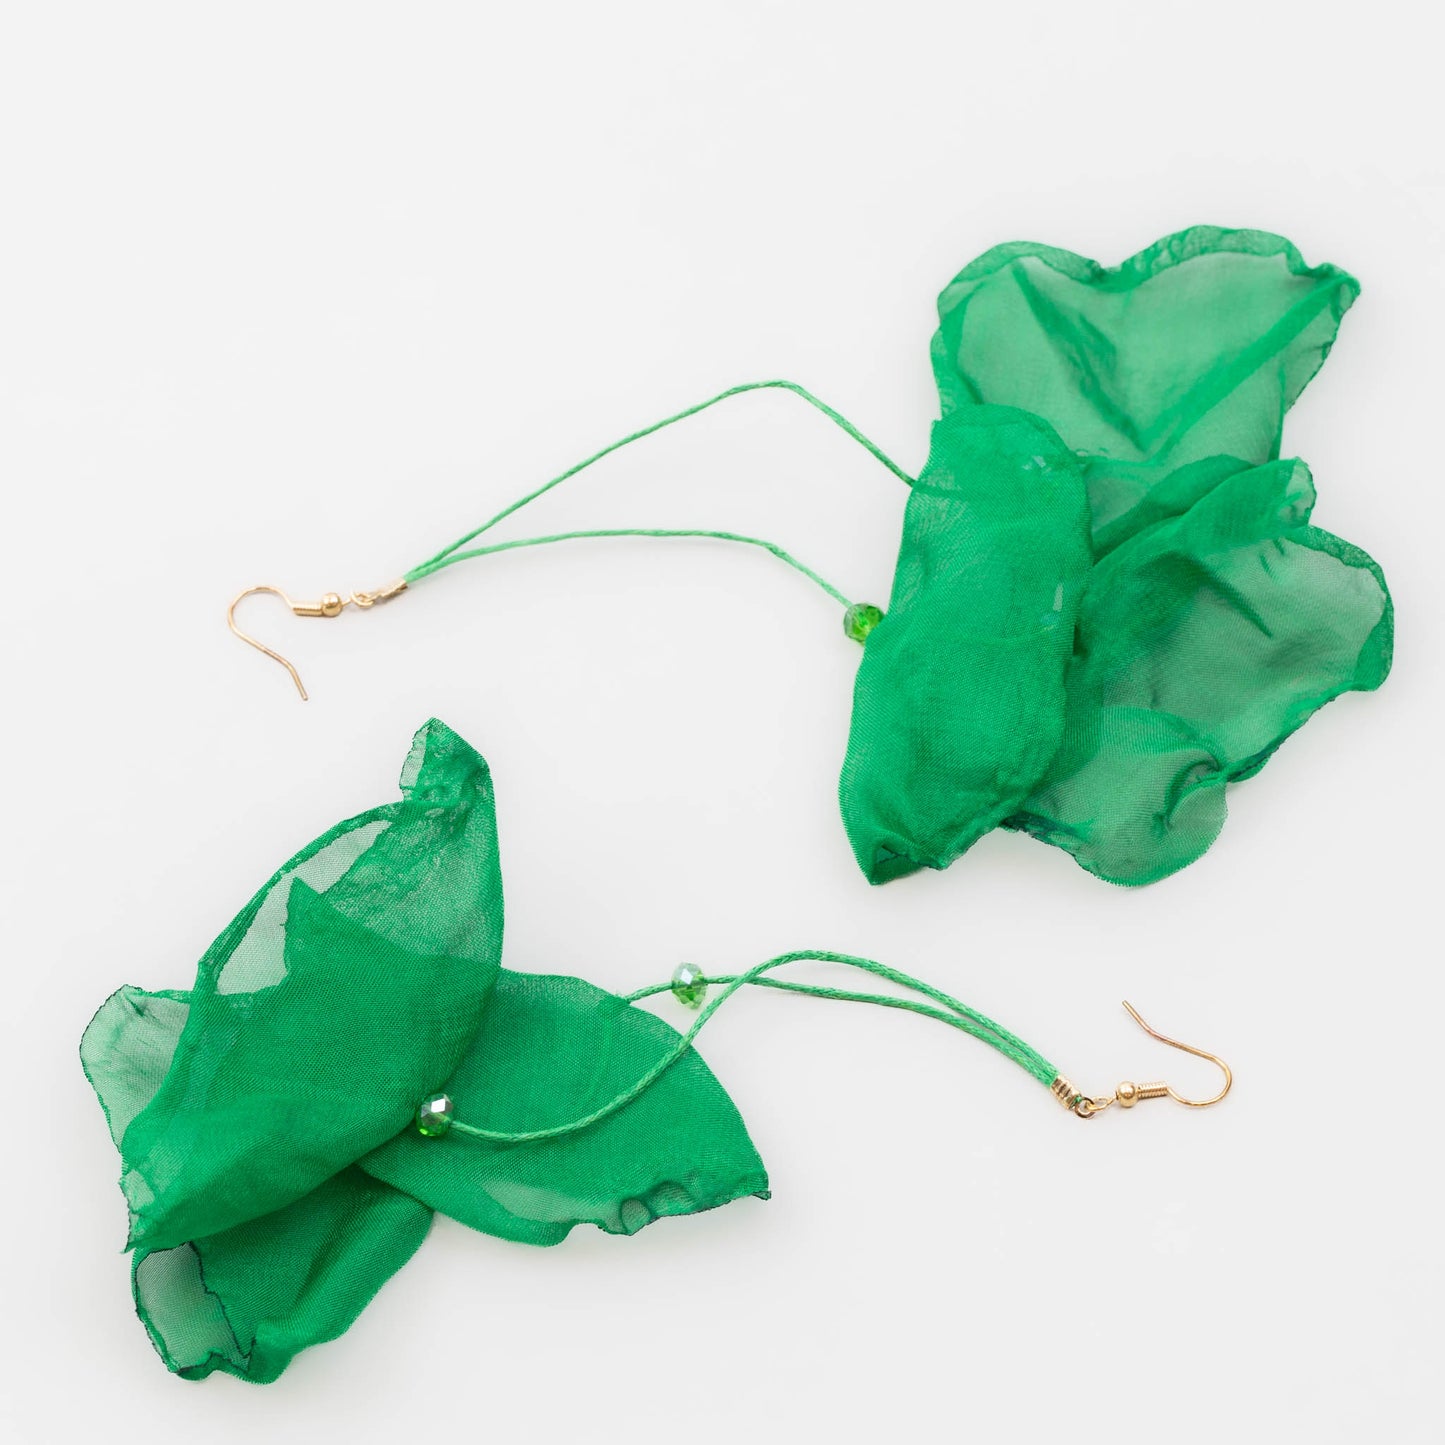 Cercei extra lungi și ușori cu petale delicate din material textil - Verde